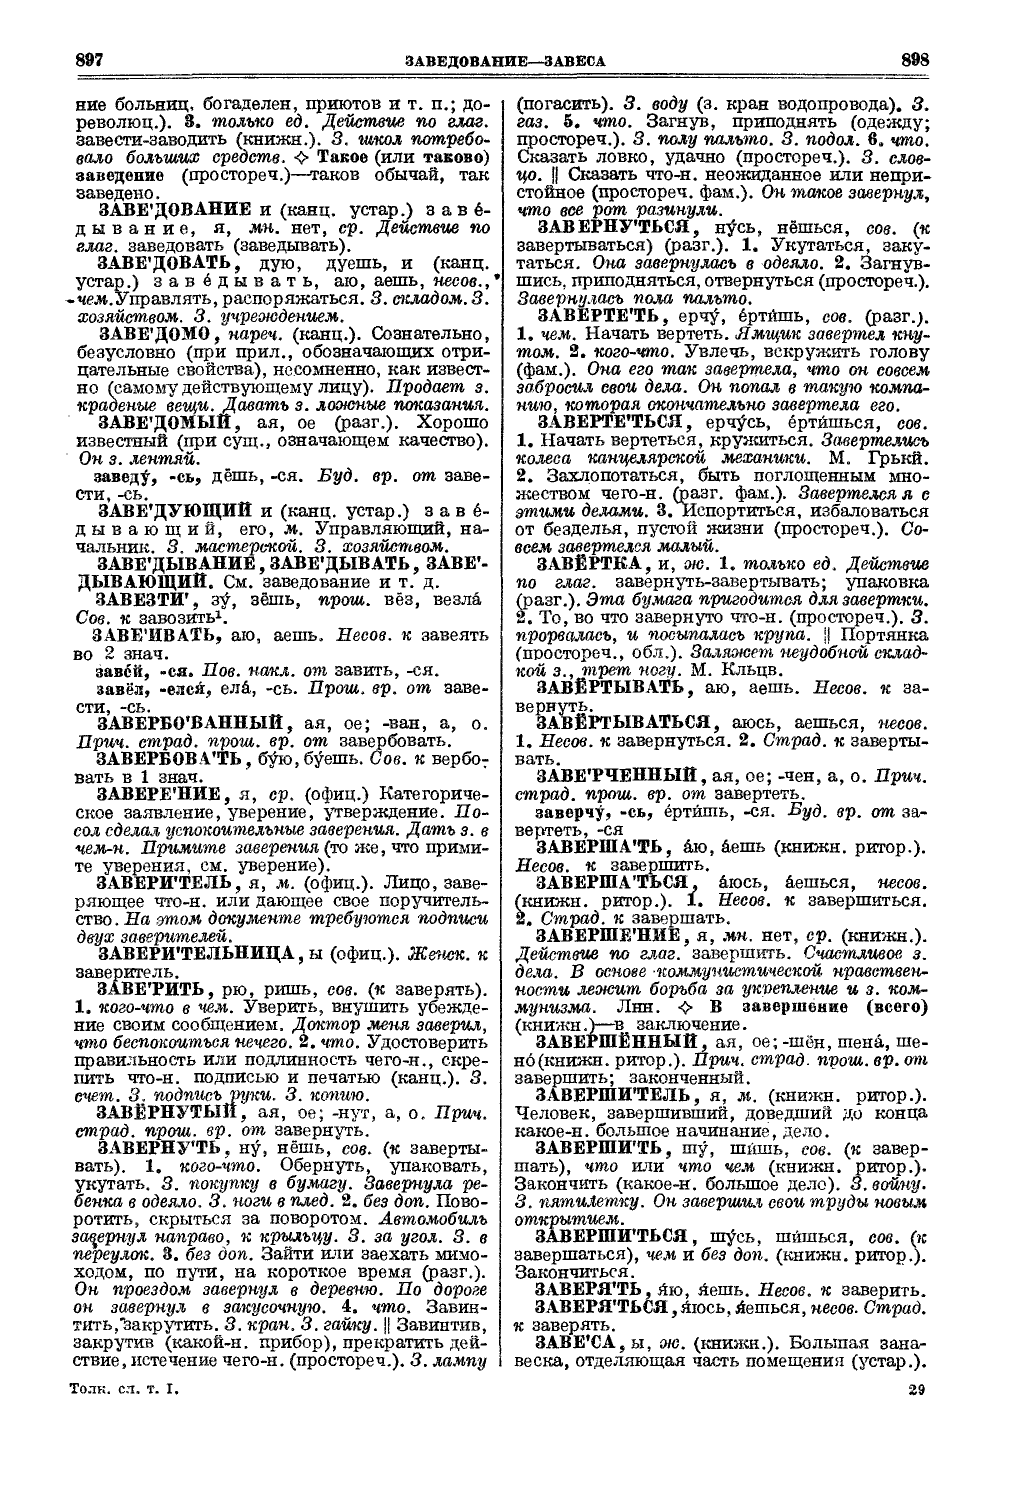 Фотокопия pdf / скан страницы 487 толкового словаря Ушакова (том 1)